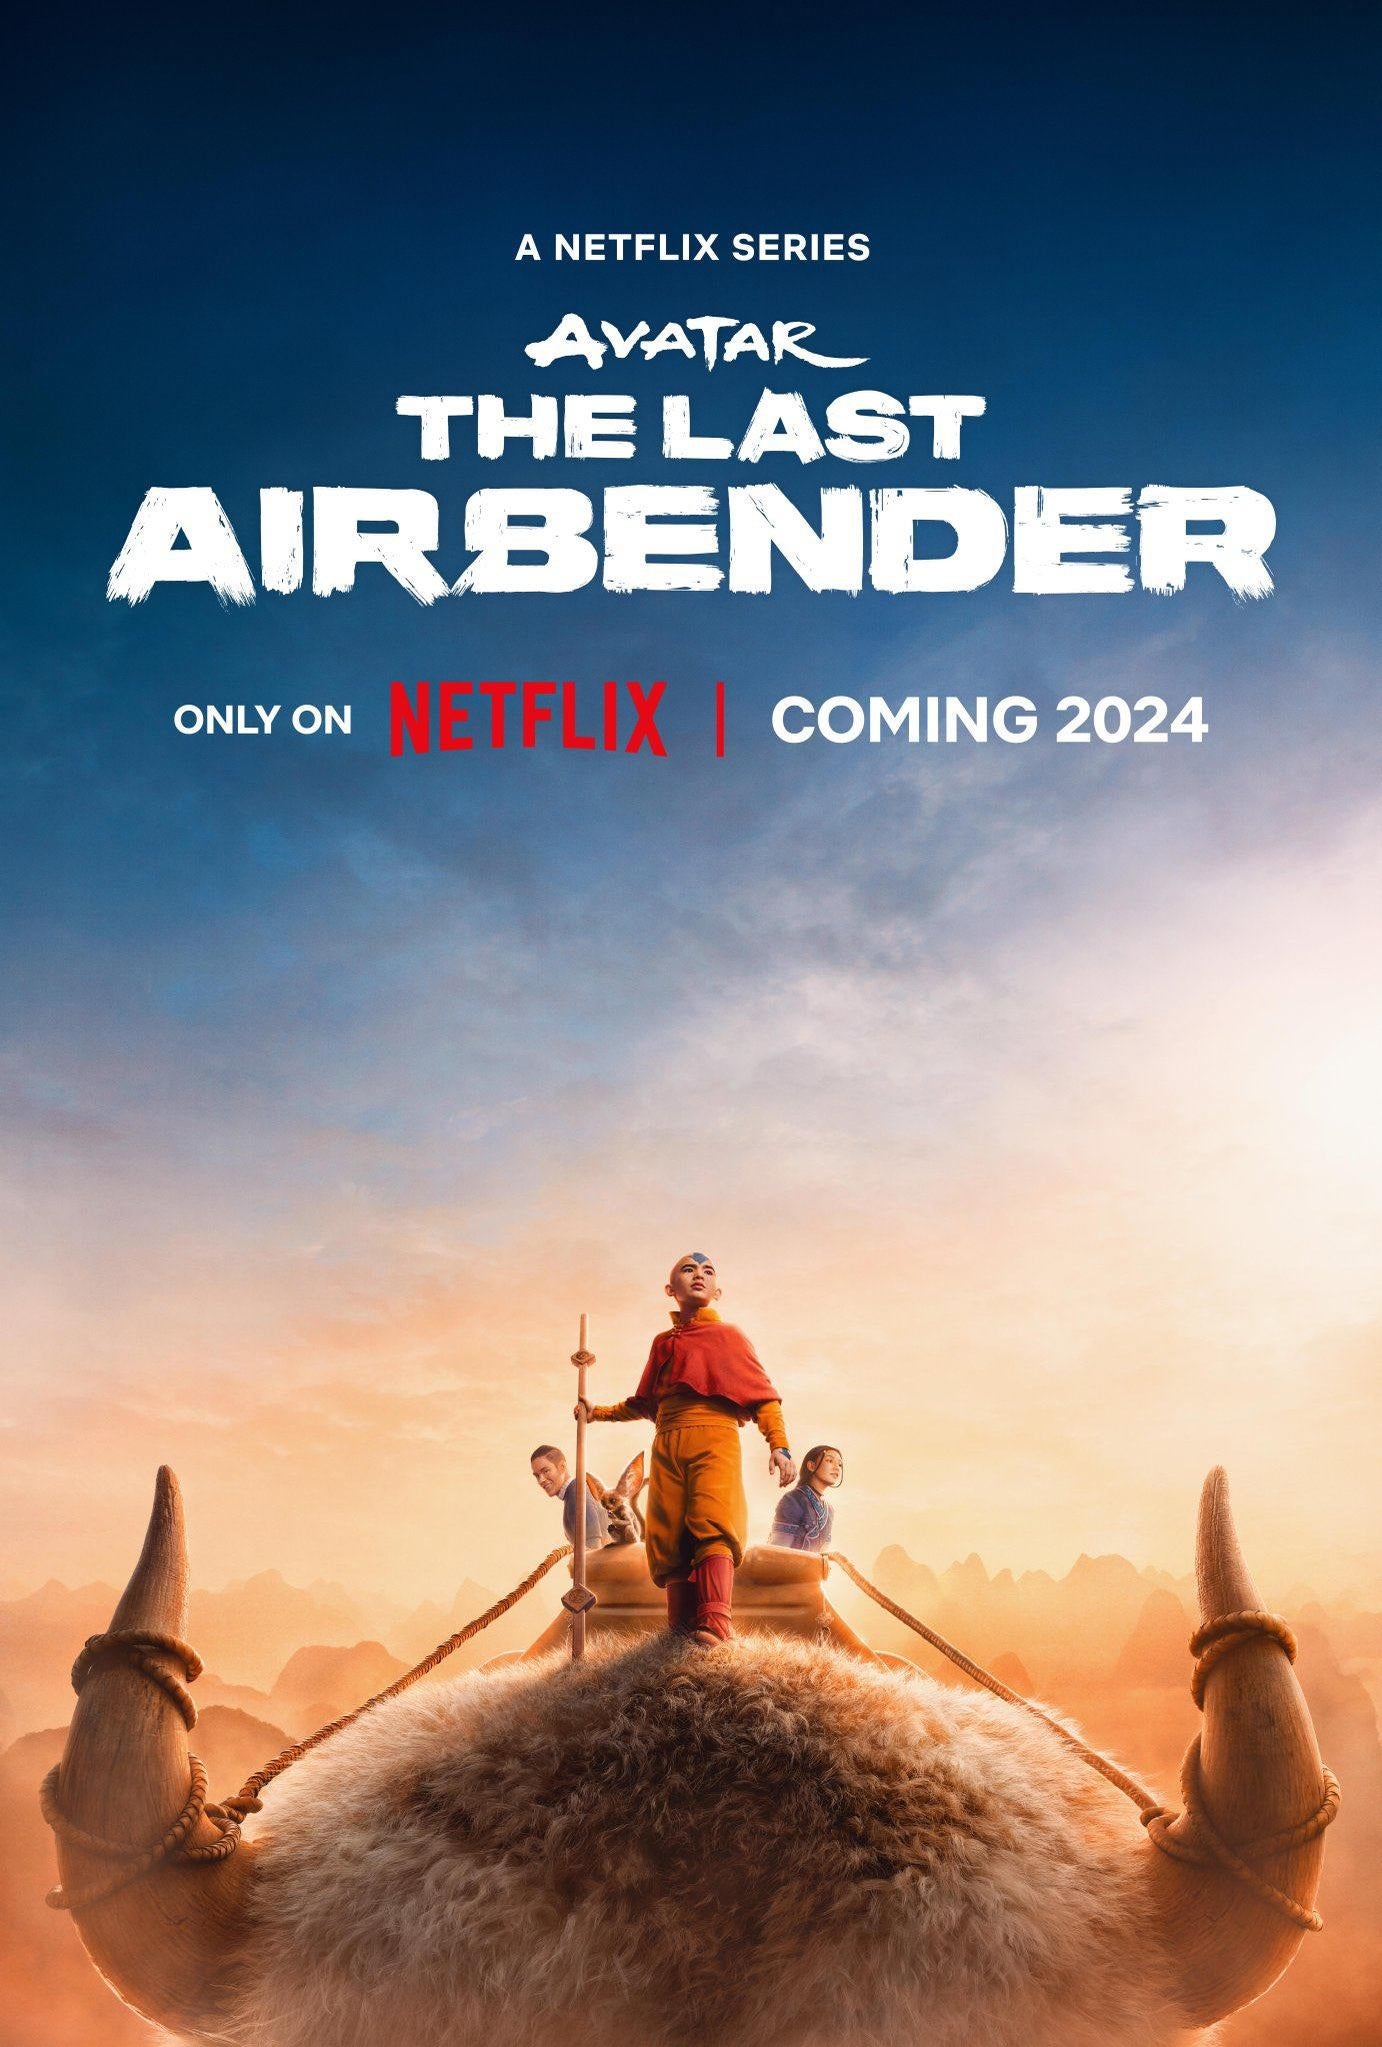 Avatar the last airbender/ავატარი ჰაერის უკანასკნელი მბრძანებელი